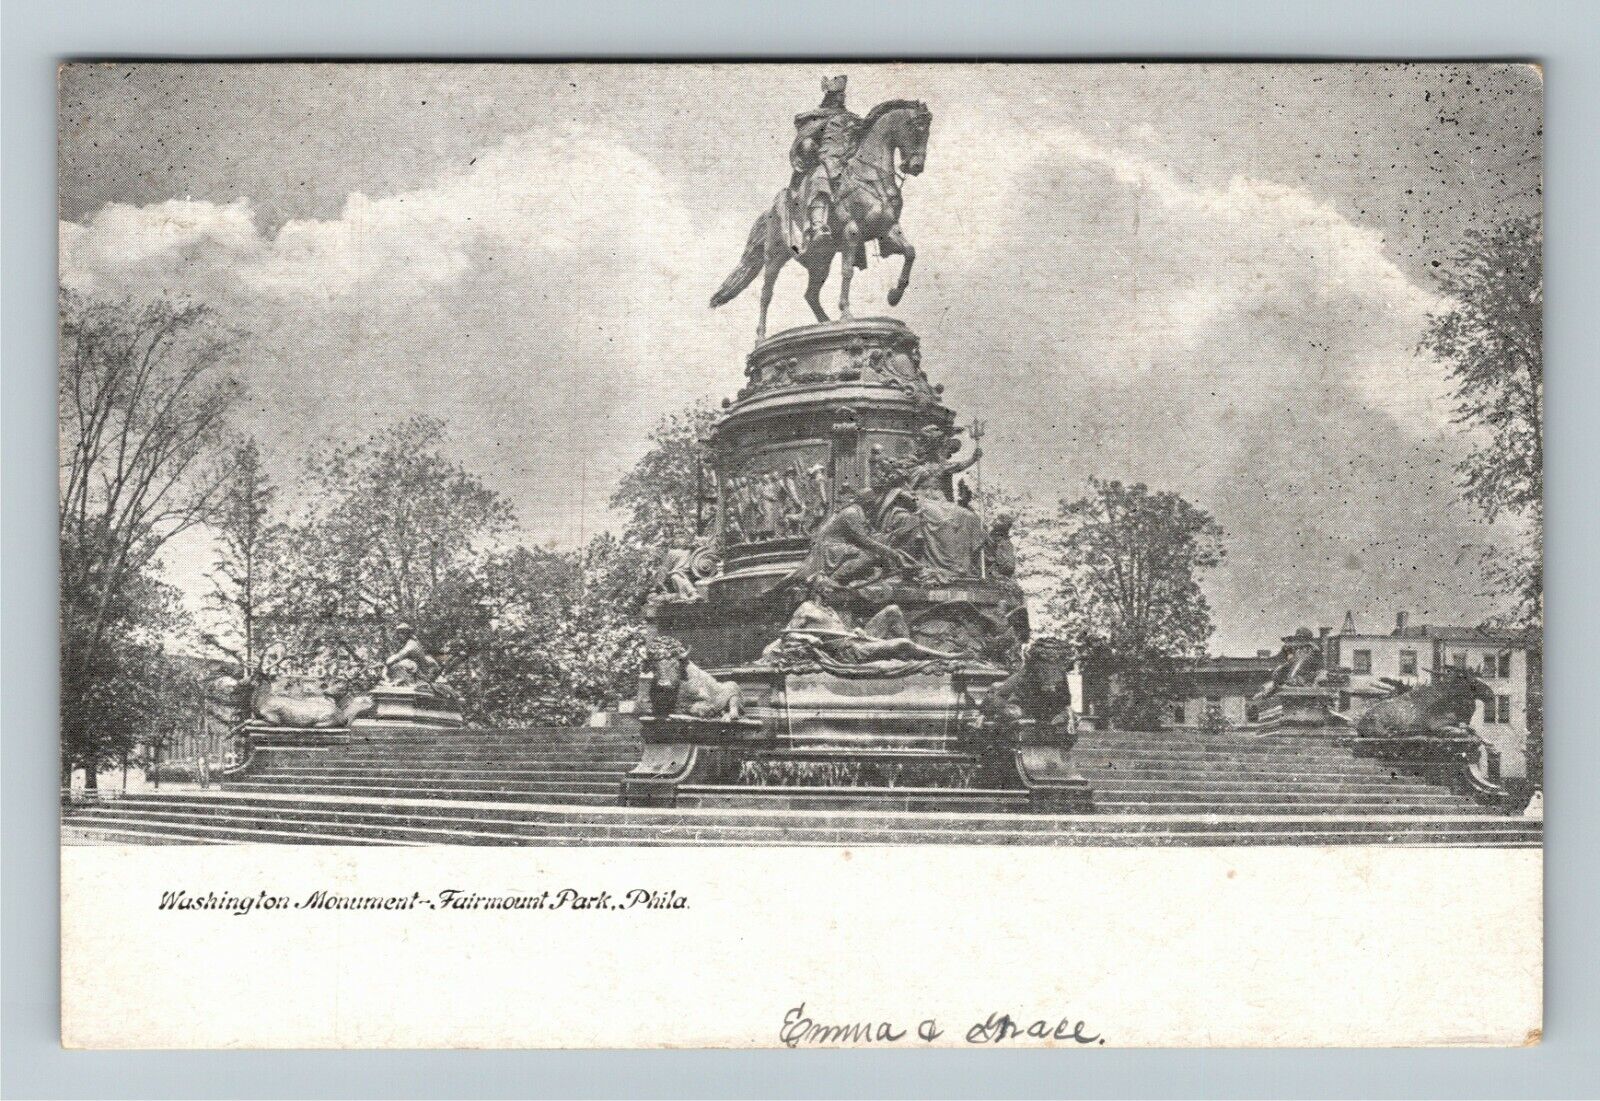 Fairmount Park PA-Pennsylvania, Washington Monument, Vintage Postcard